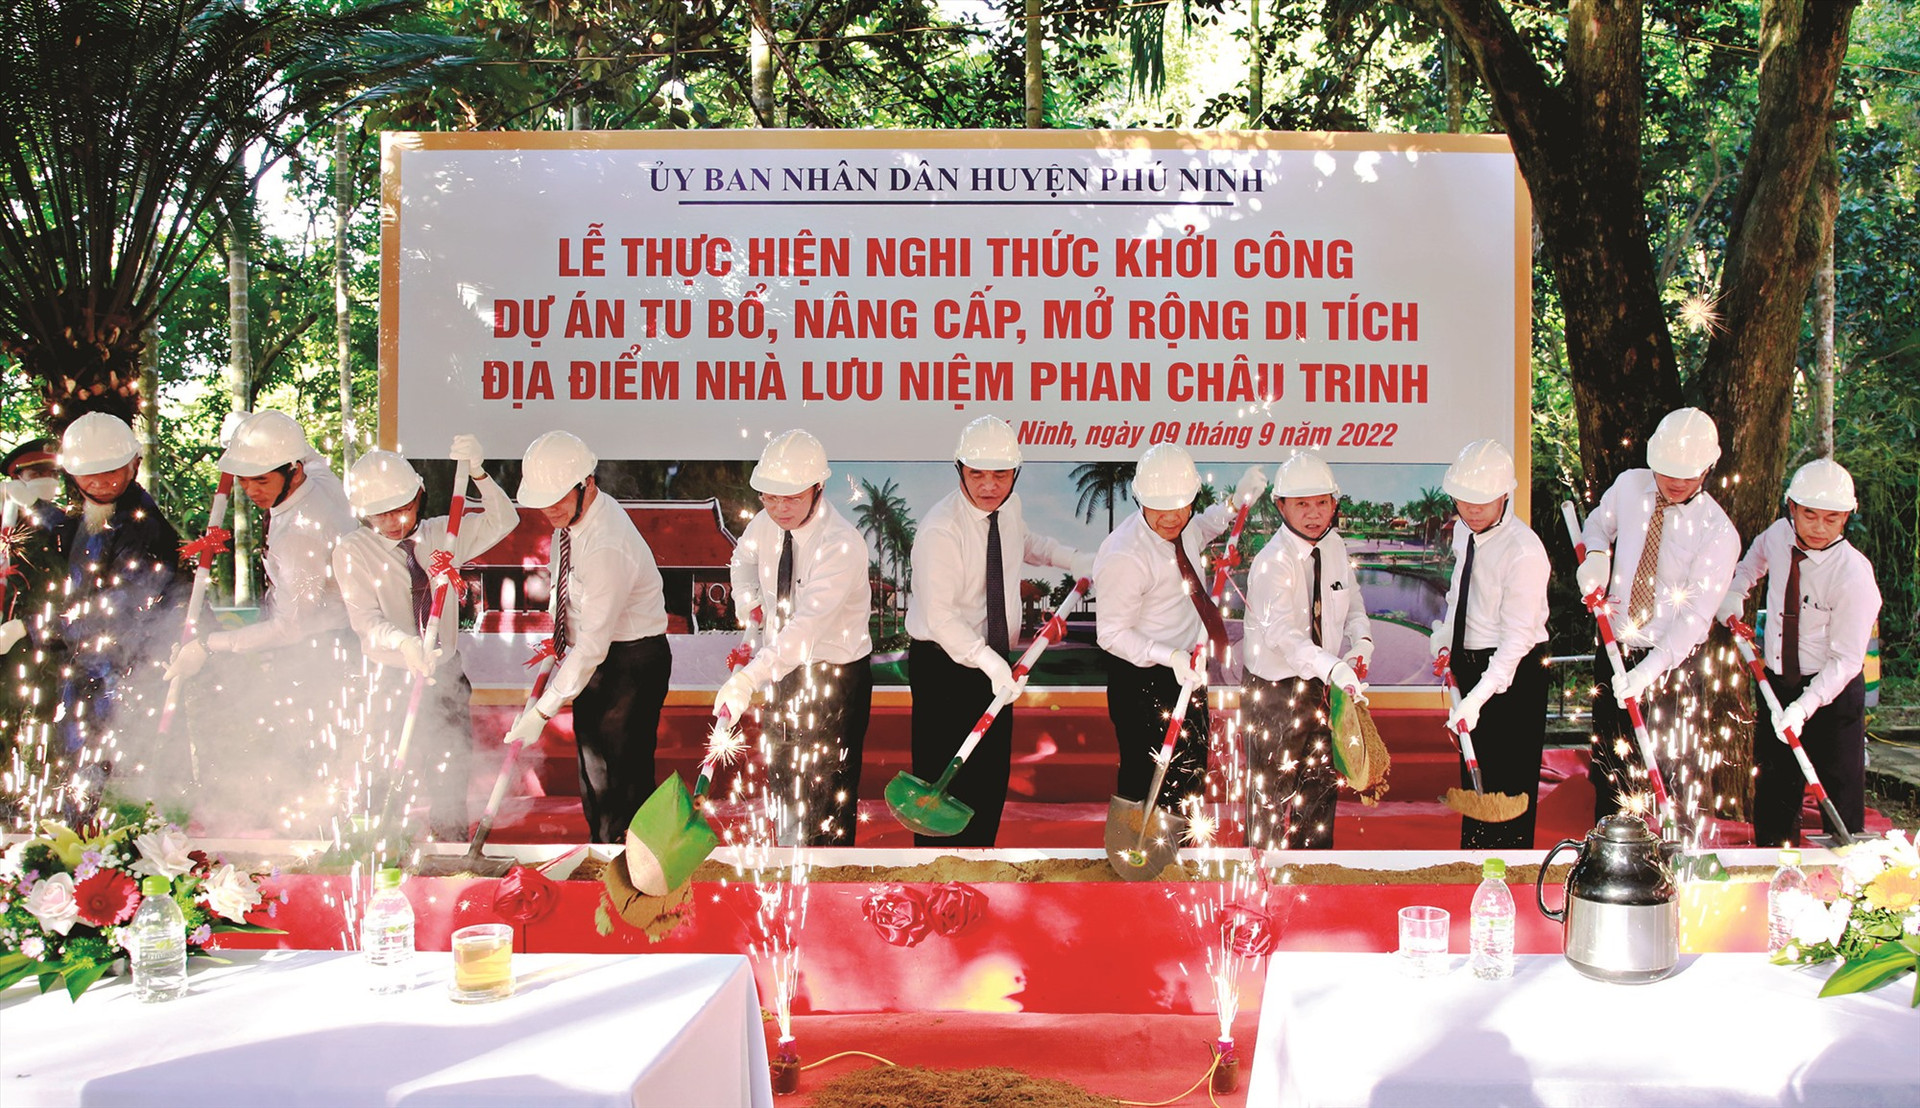 Lãnh đạo tỉnh thực hiện nghi thức khởi công dự án tu bổ, nâng cấp, mở rộng Nhà lưu niệm cụ Phan Châu Trinh tại Phú Ninh, tháng 9/2022. Ảnh: T.C